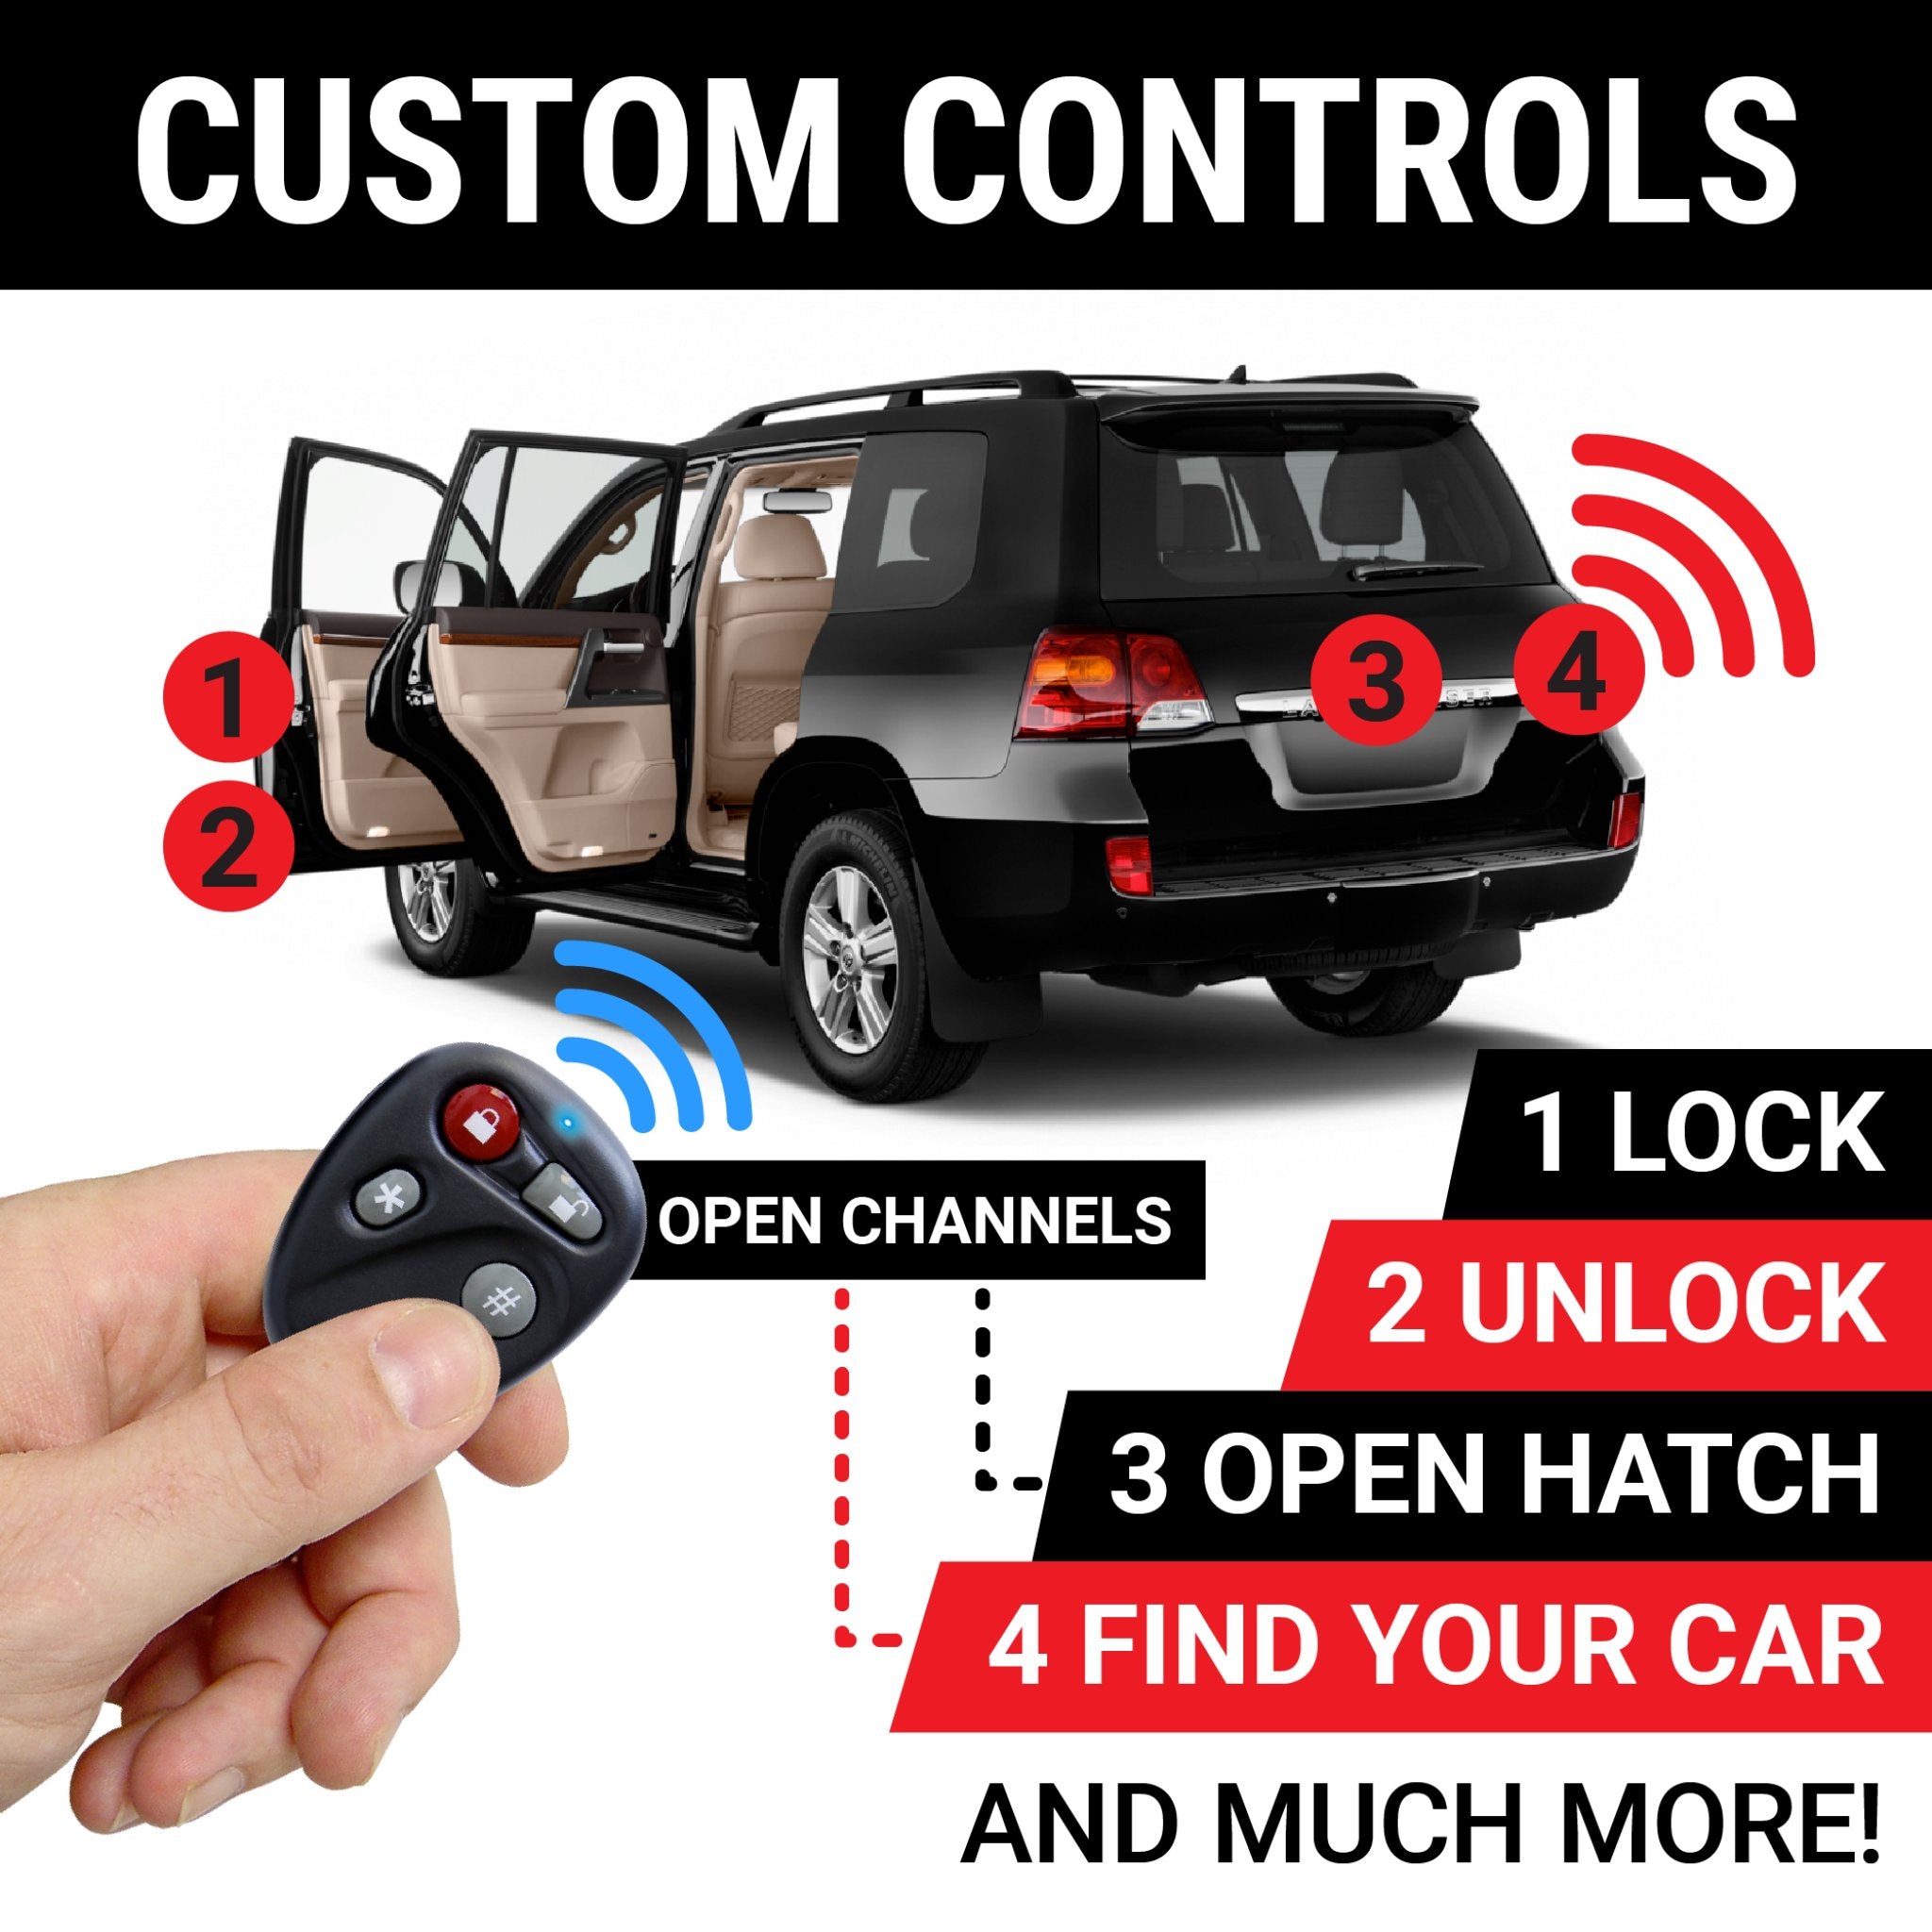 Autoloc 4 canales Control remoto sistema de entrada sin llave 2 llavero cerradura desbloquear puerta